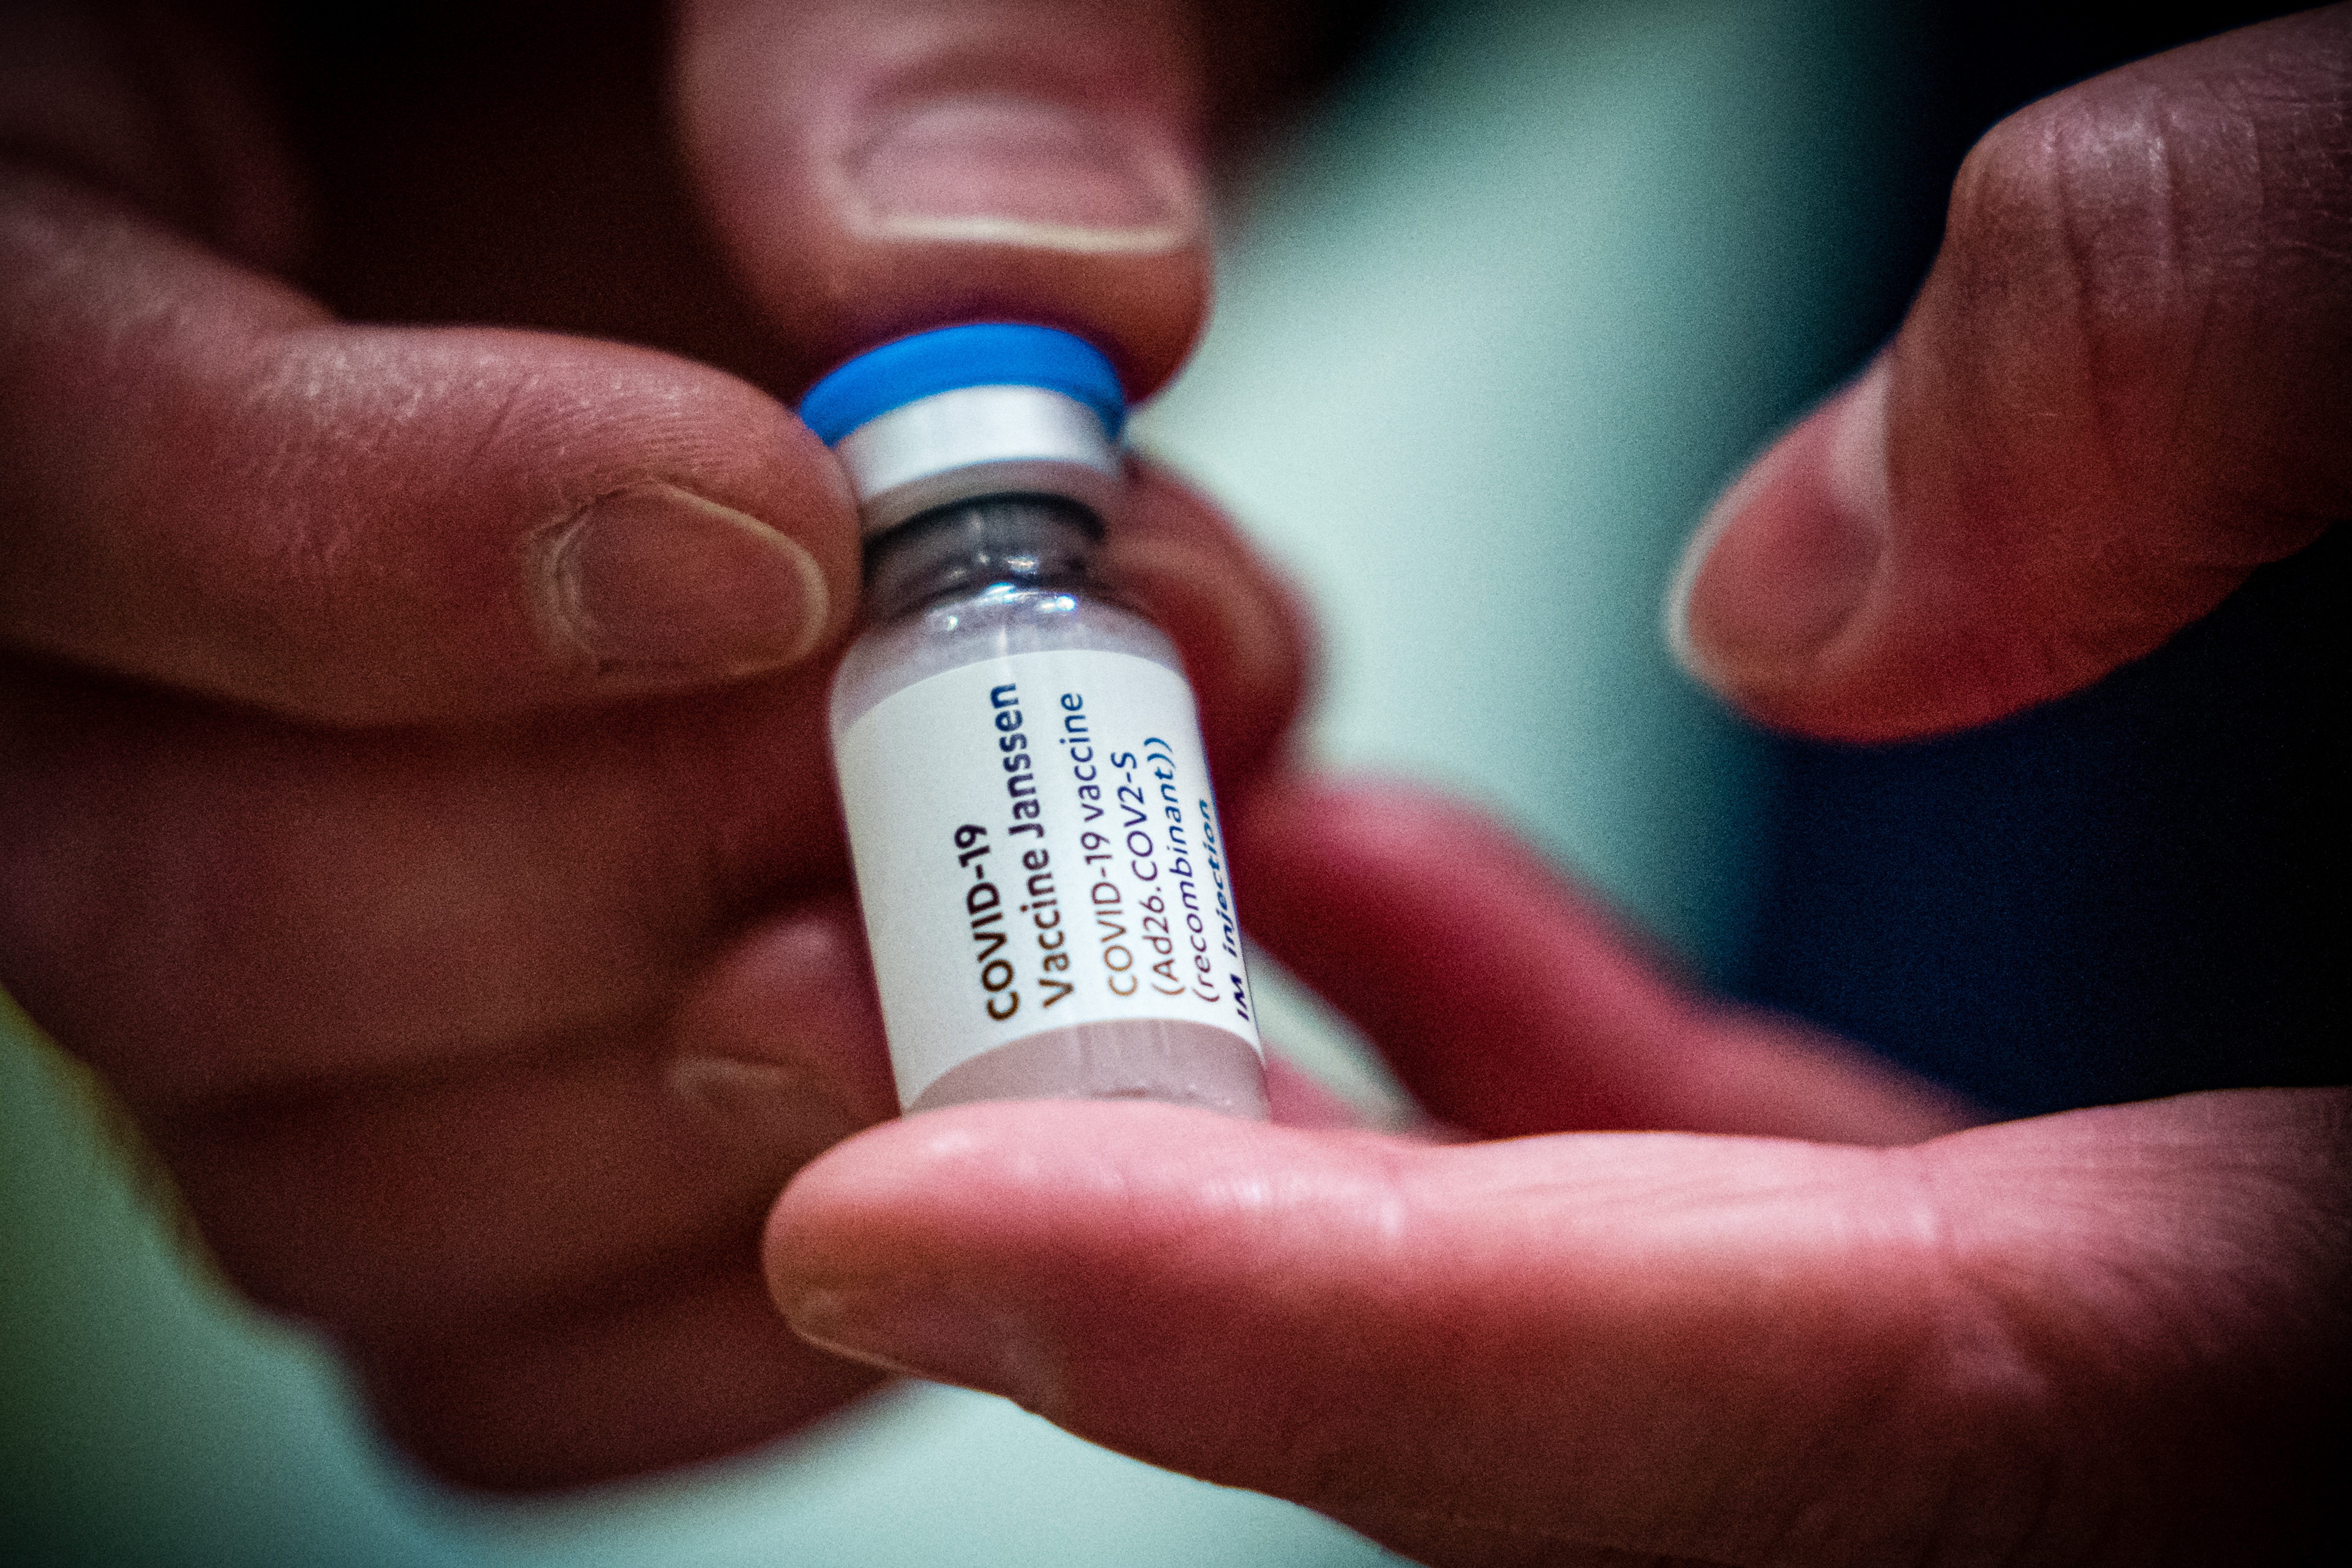 Magyarországra épp megérkezett a Johnson & Johnson vakcinája, az USA-ban épp leállítják a beadását